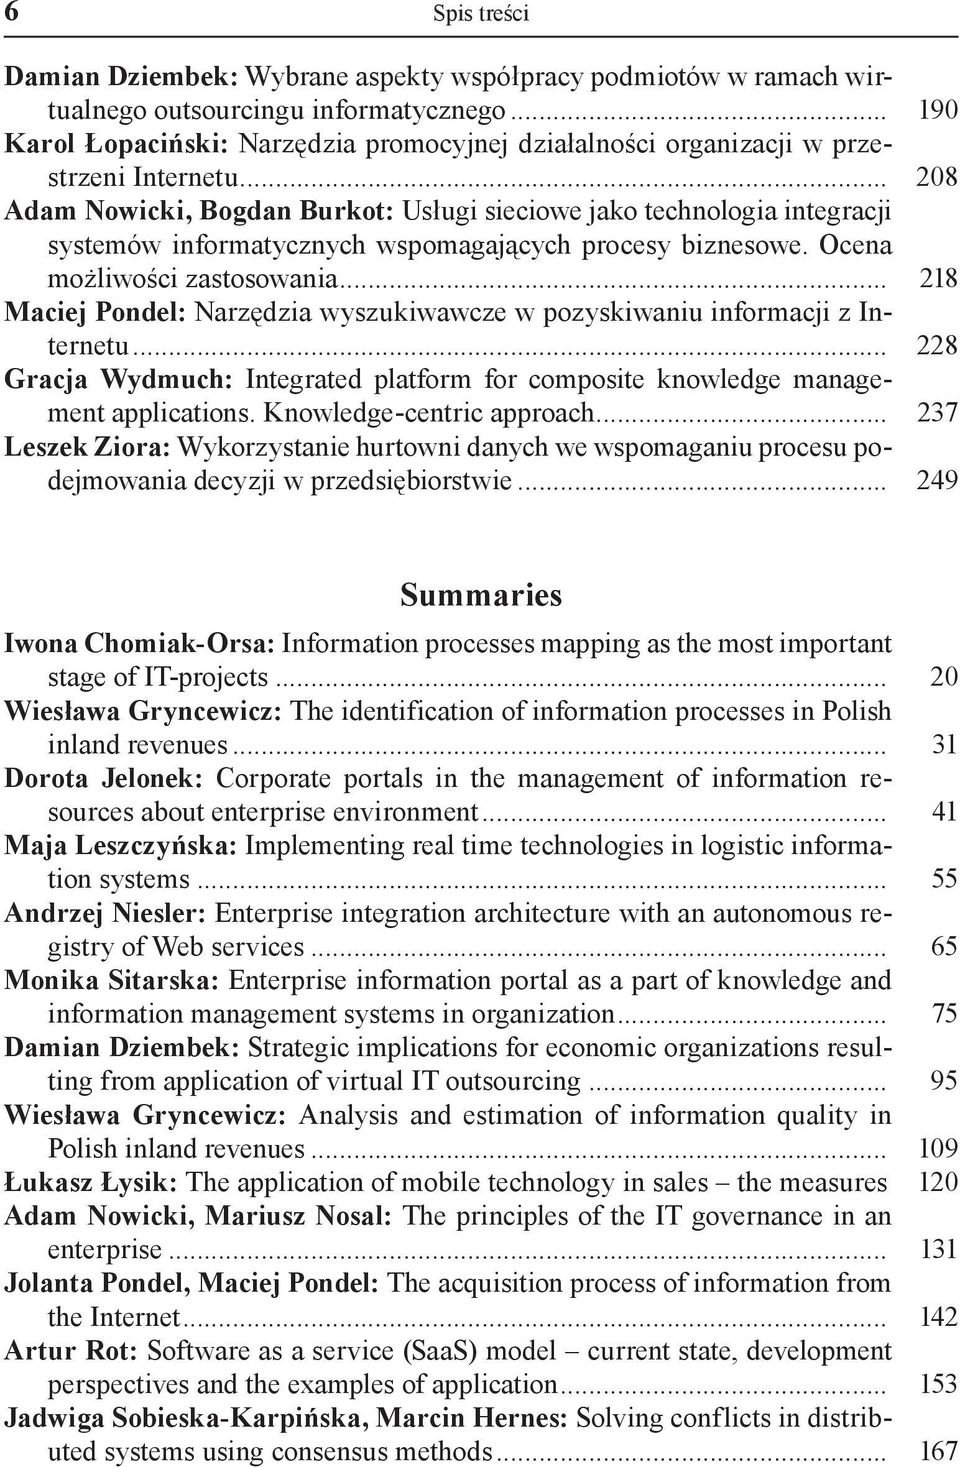 .. 208 Adam Nowicki, Bogdan Burkot: Usługi sieciowe jako technologia integracji systemów informatycznych wspomagających procesy biznesowe. Ocena możliwości zastosowania.